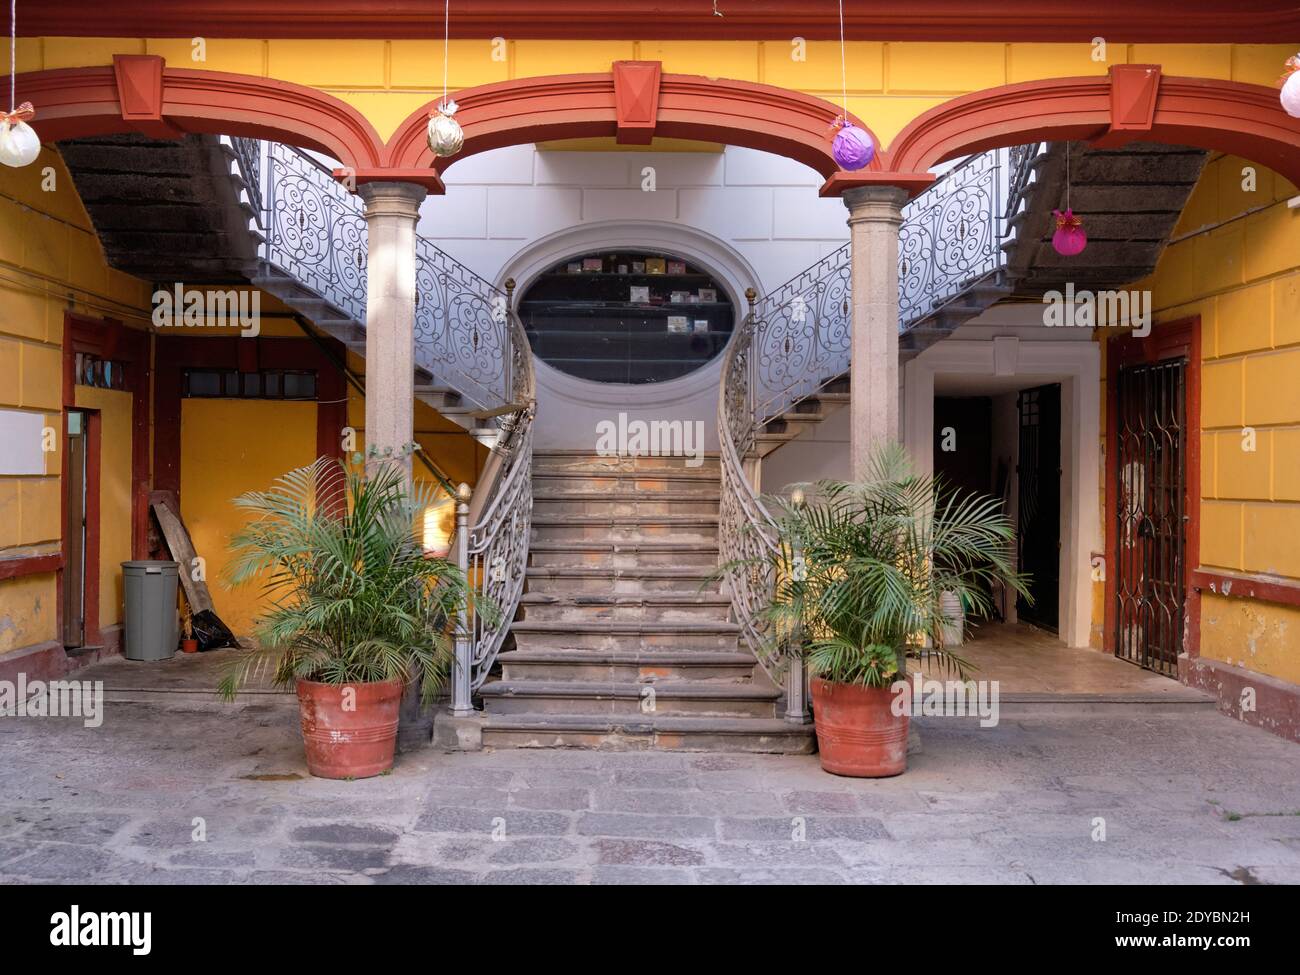 Im Inneren des mexikanischen Innenhofs mit Treppen, die sich auf beiden Seiten nach oben führen Gelb gestrichene Bögen Stockfoto